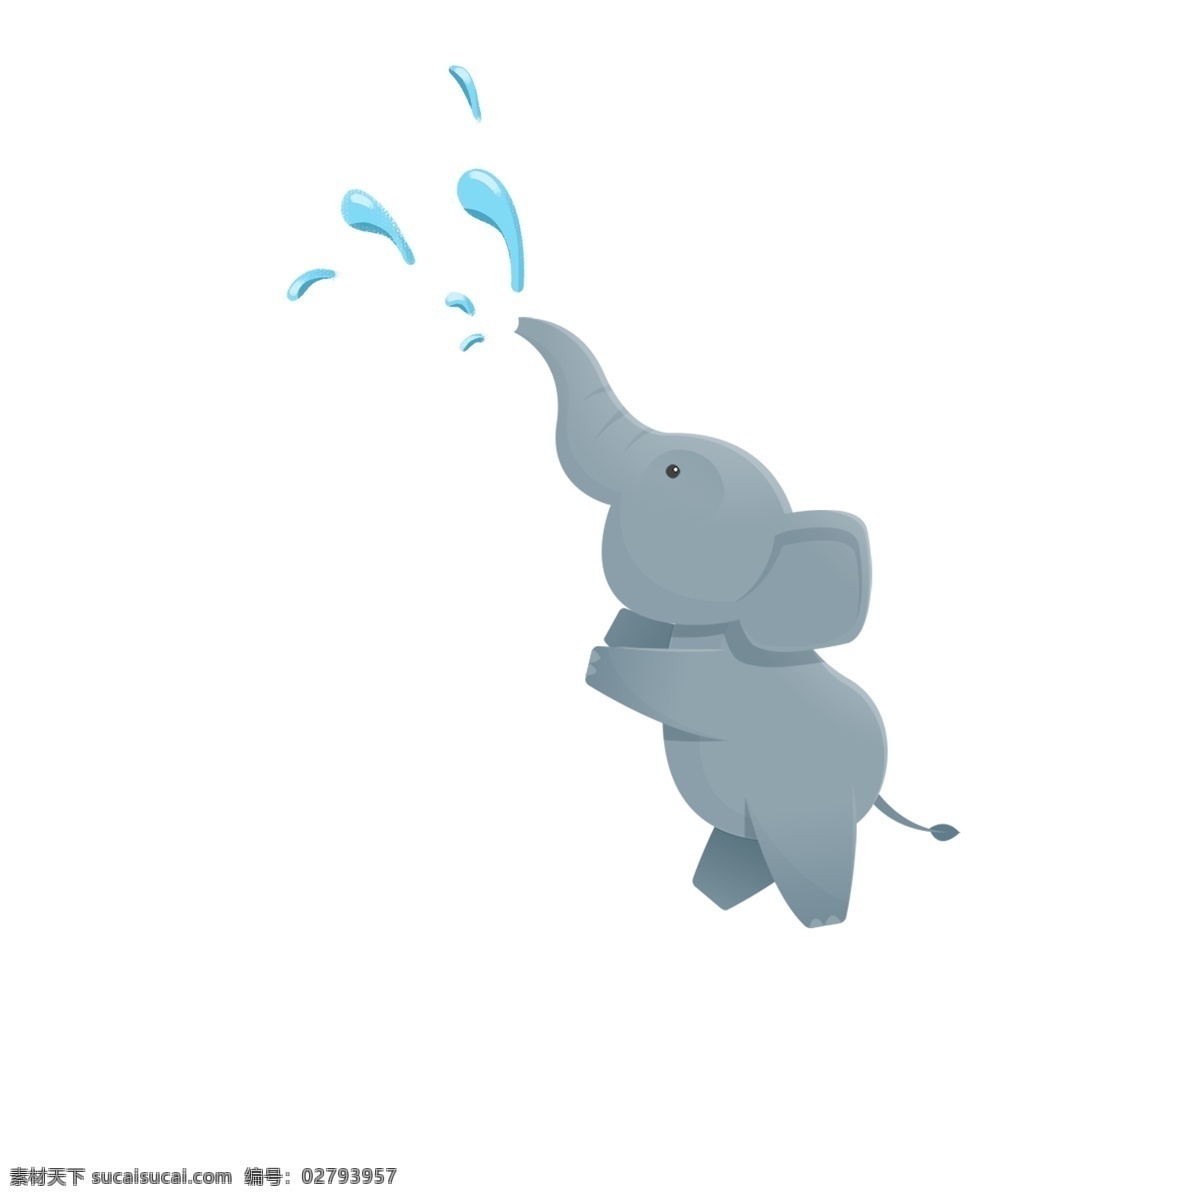 原创 卡通 可爱 小象 元素 喷水